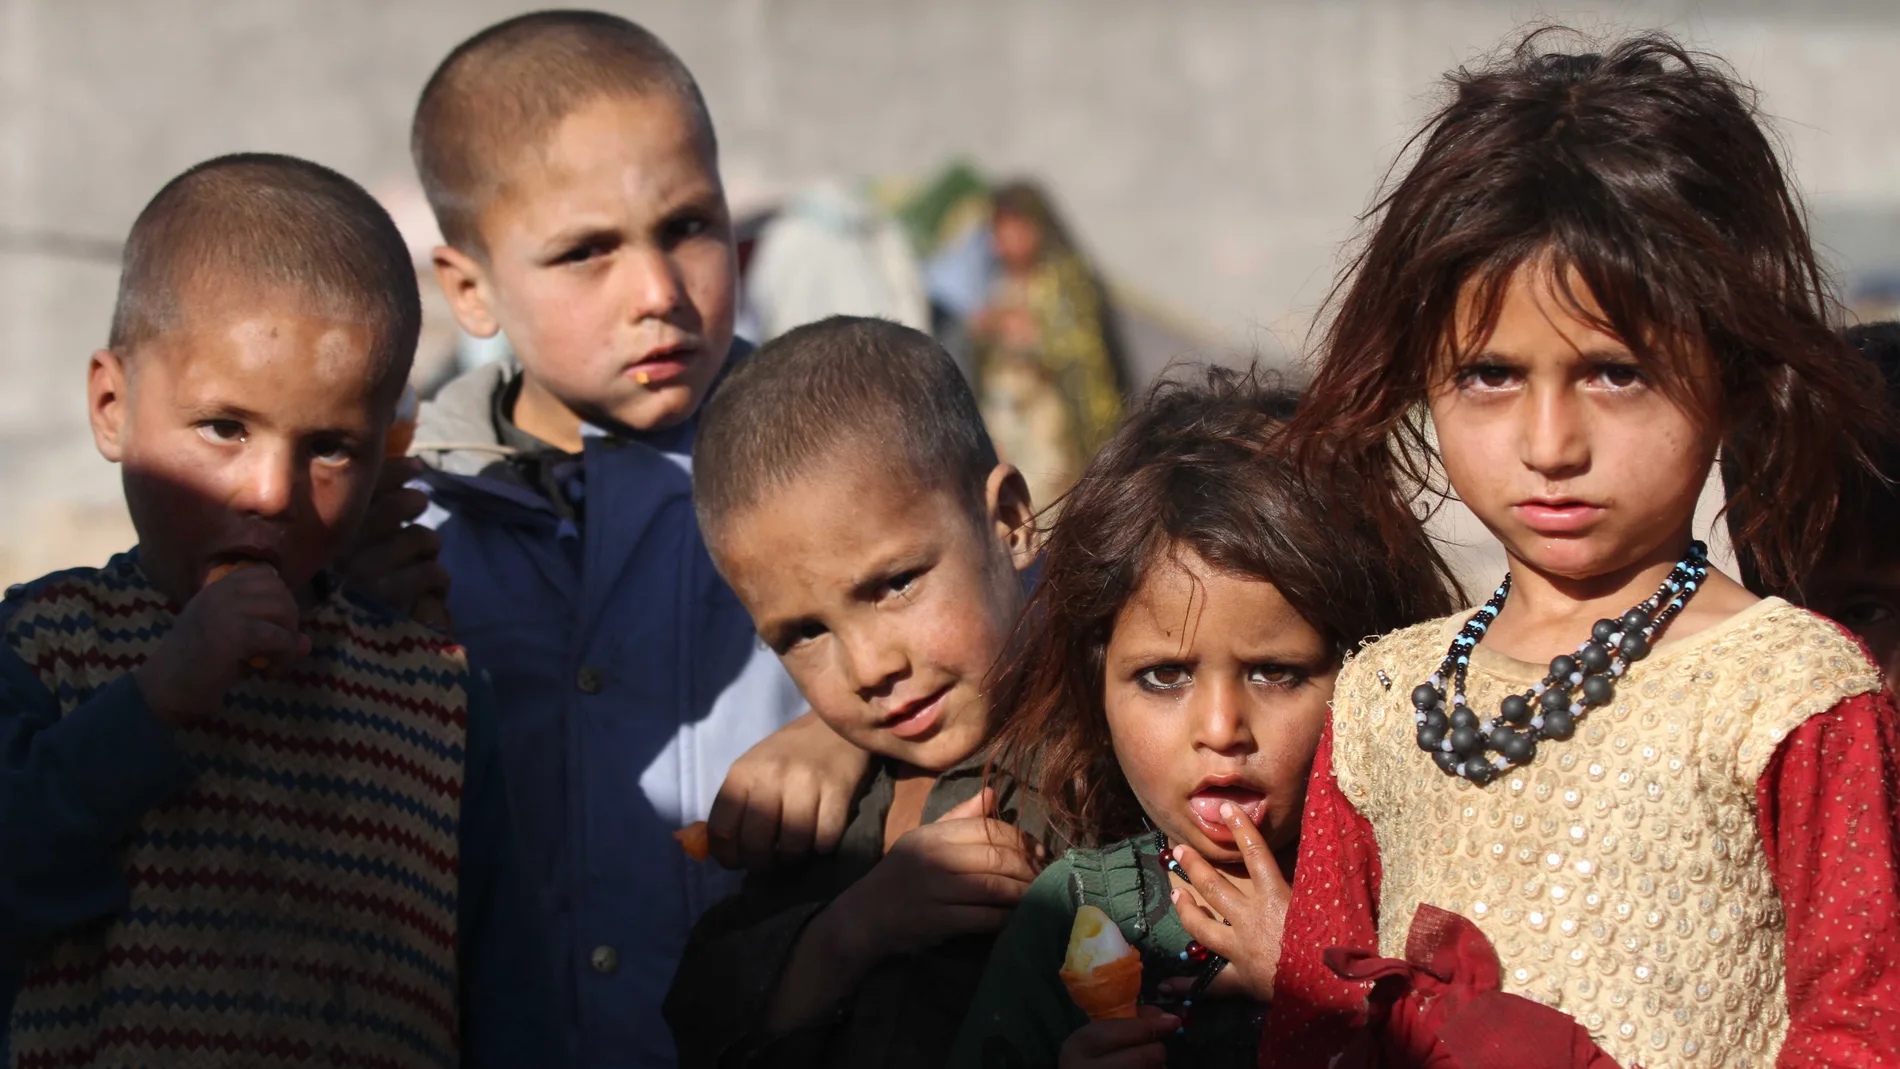 25/10/2020.- Varios niños desplazados de provincias afectadas por la guerra vive en un campo de refugiados temporal en Herat, Afganistán.